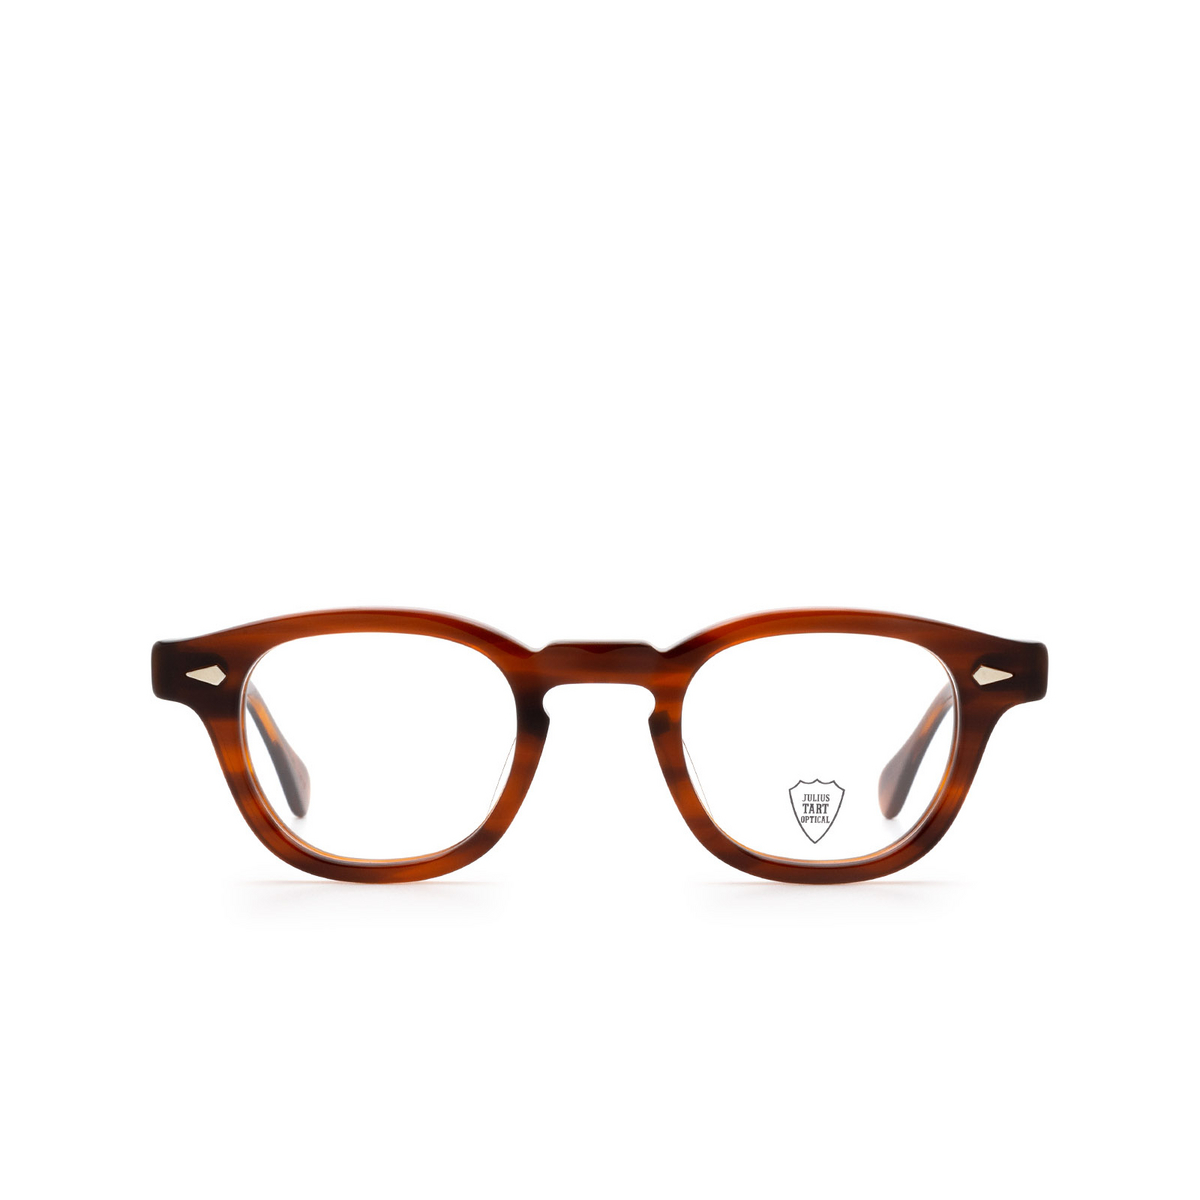 Julius Tart AR Eyeglasses AMBER - front view